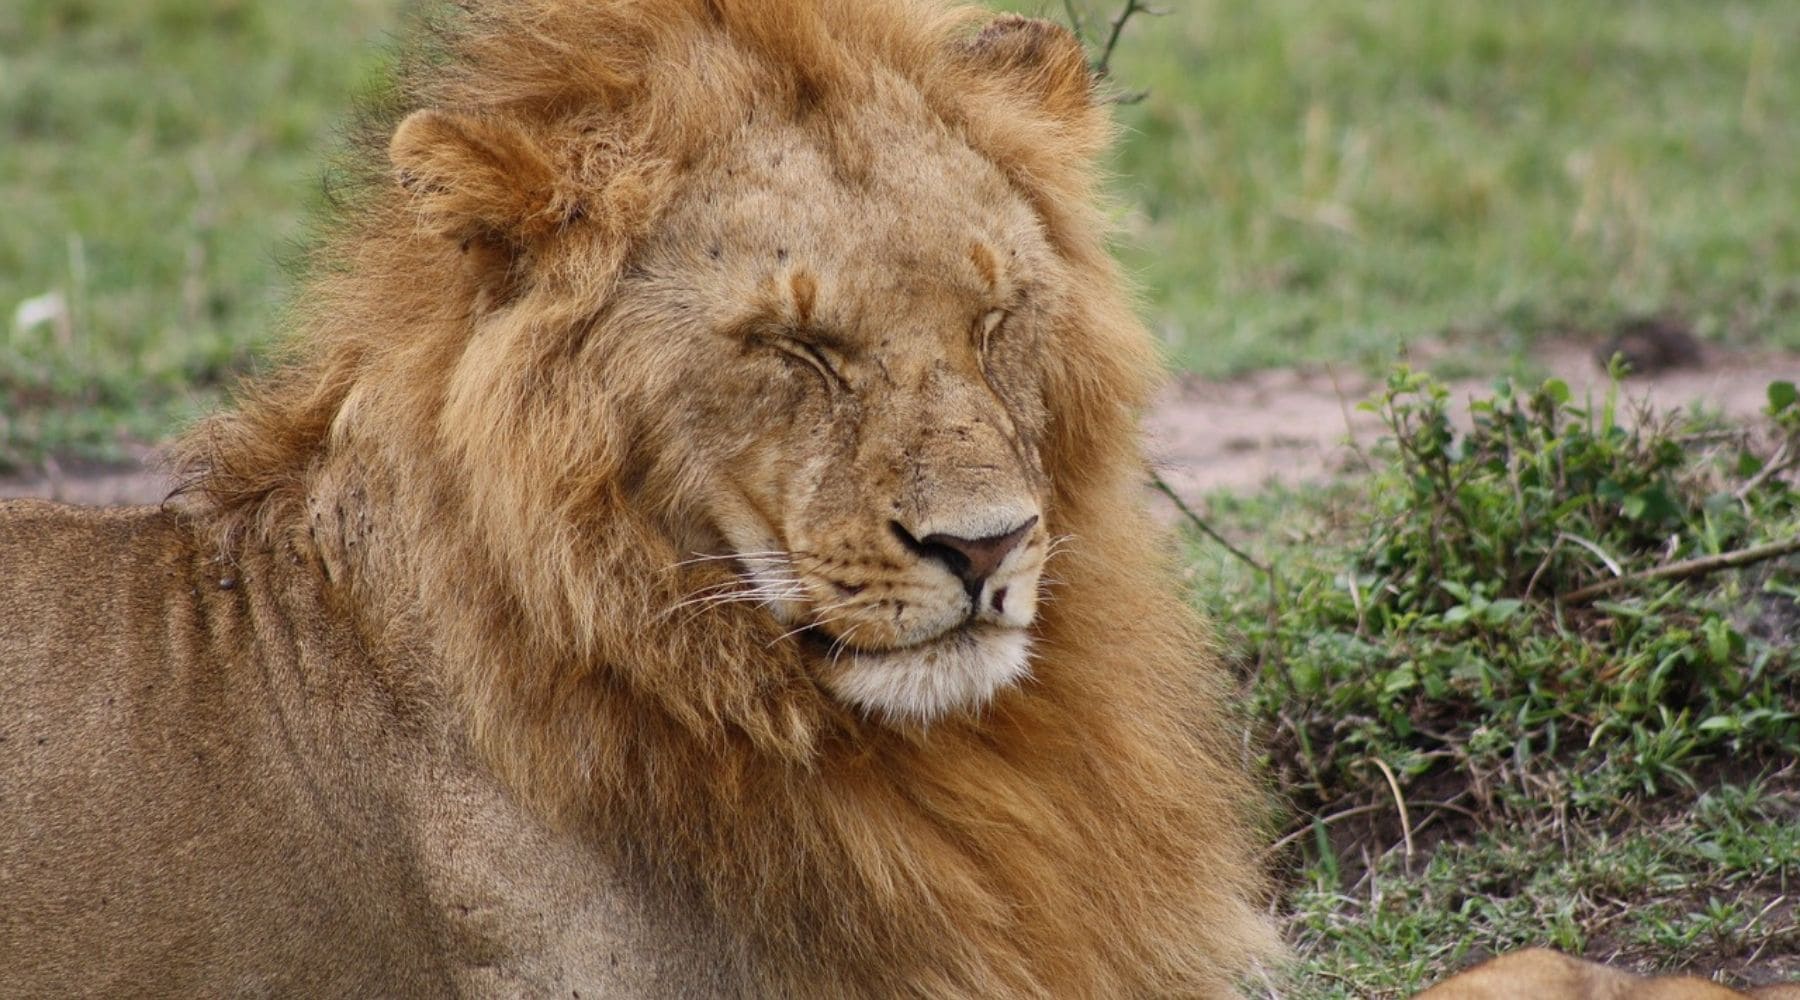 Lion massai male